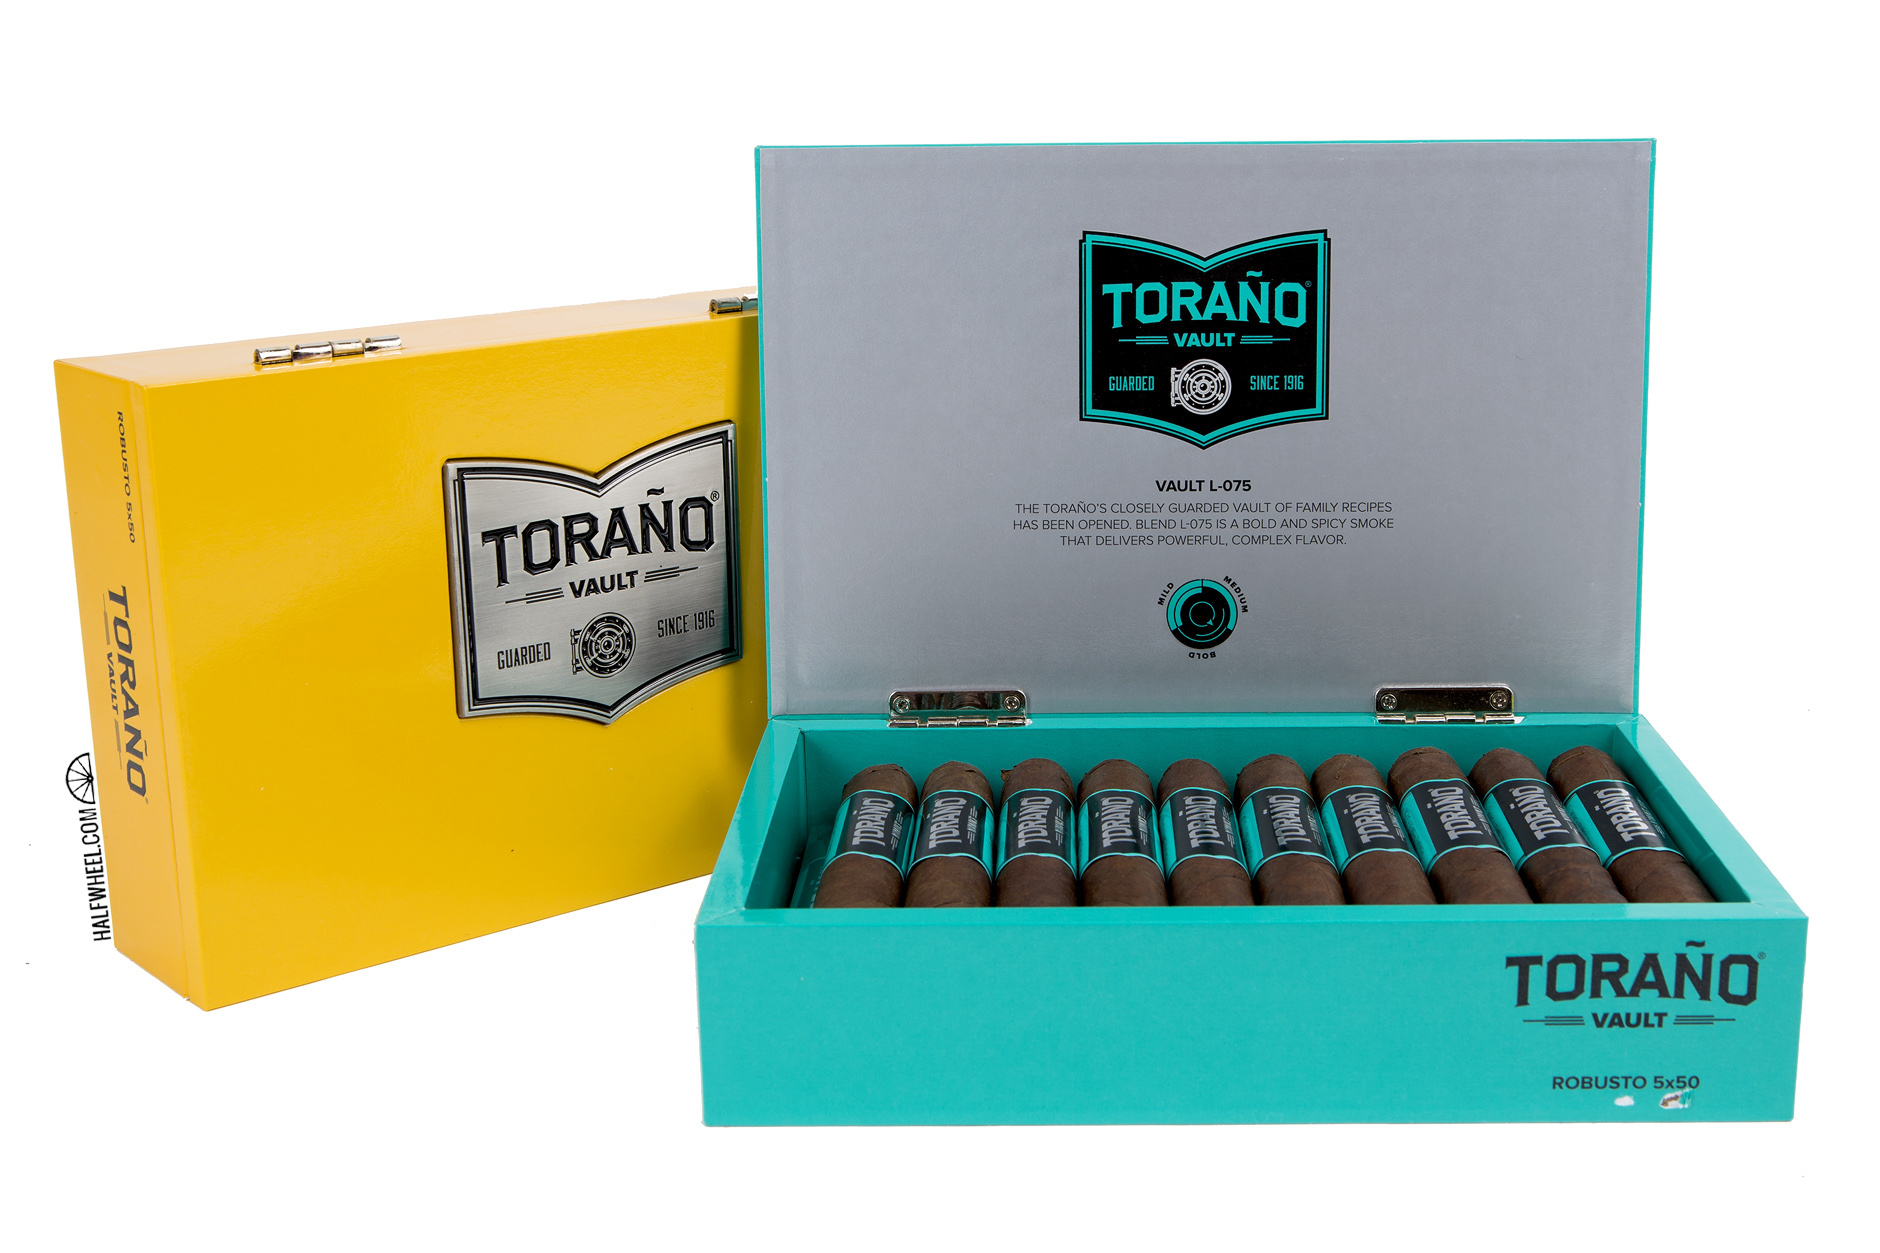 Torano Vault C-033 & L-075 boxes